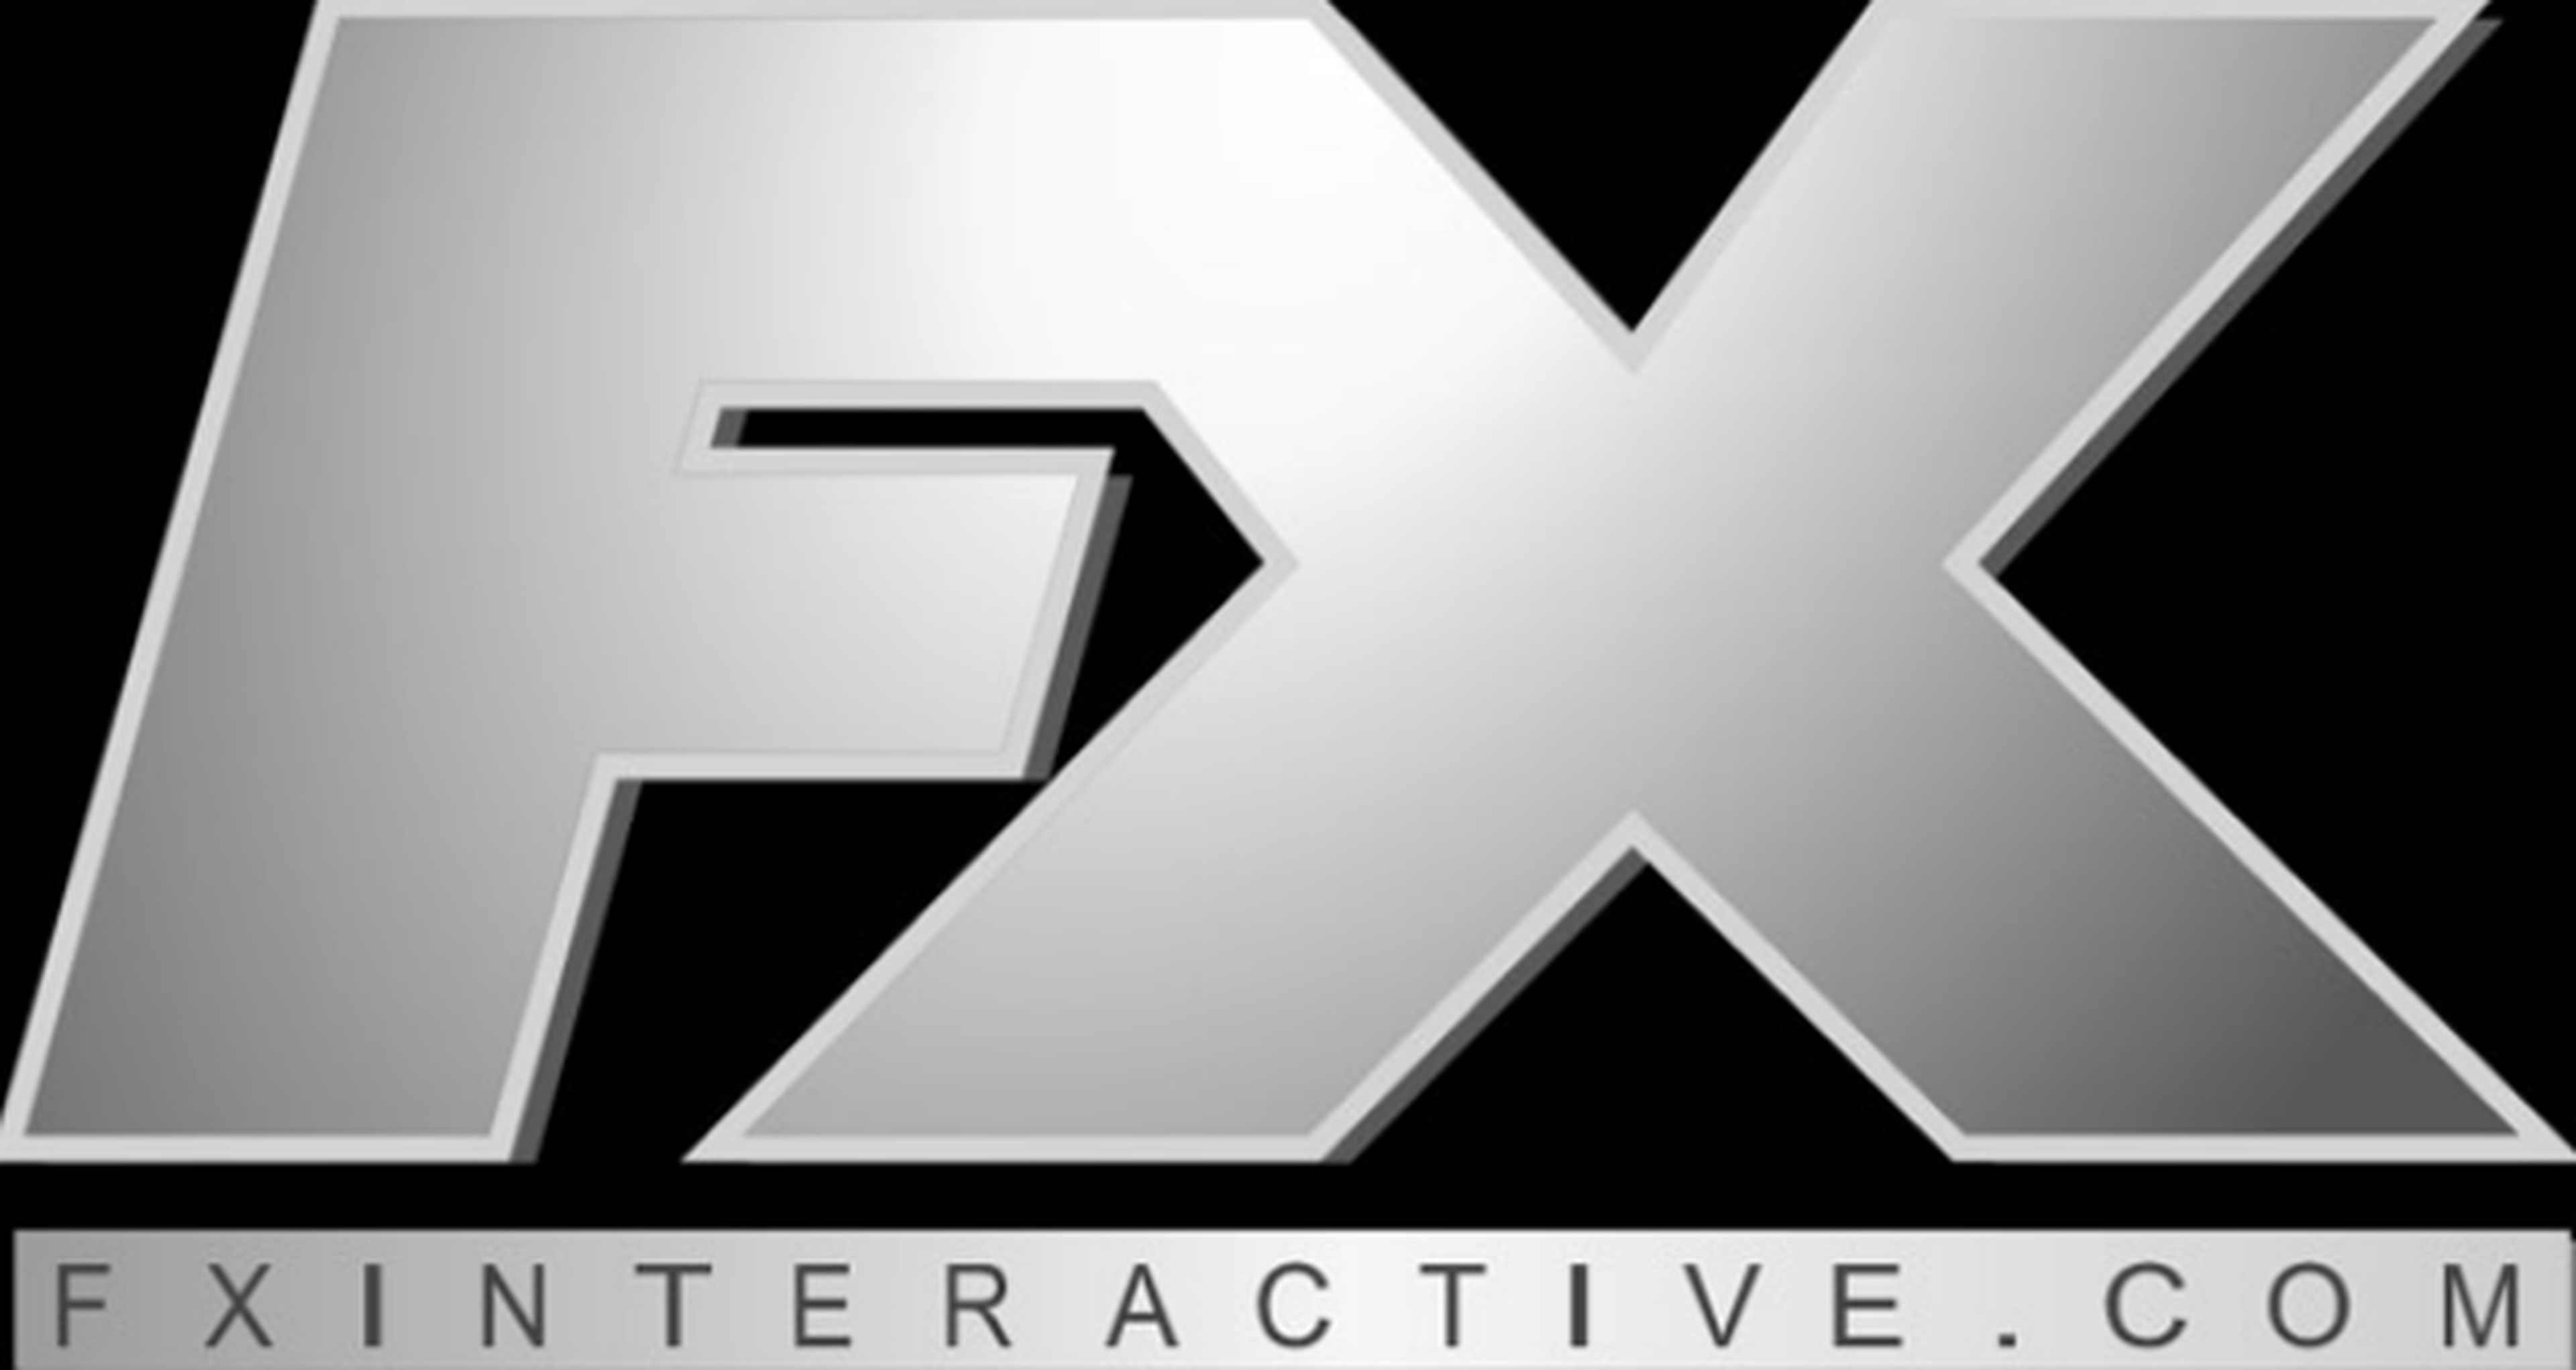 FX Interactive en grave crisis económica